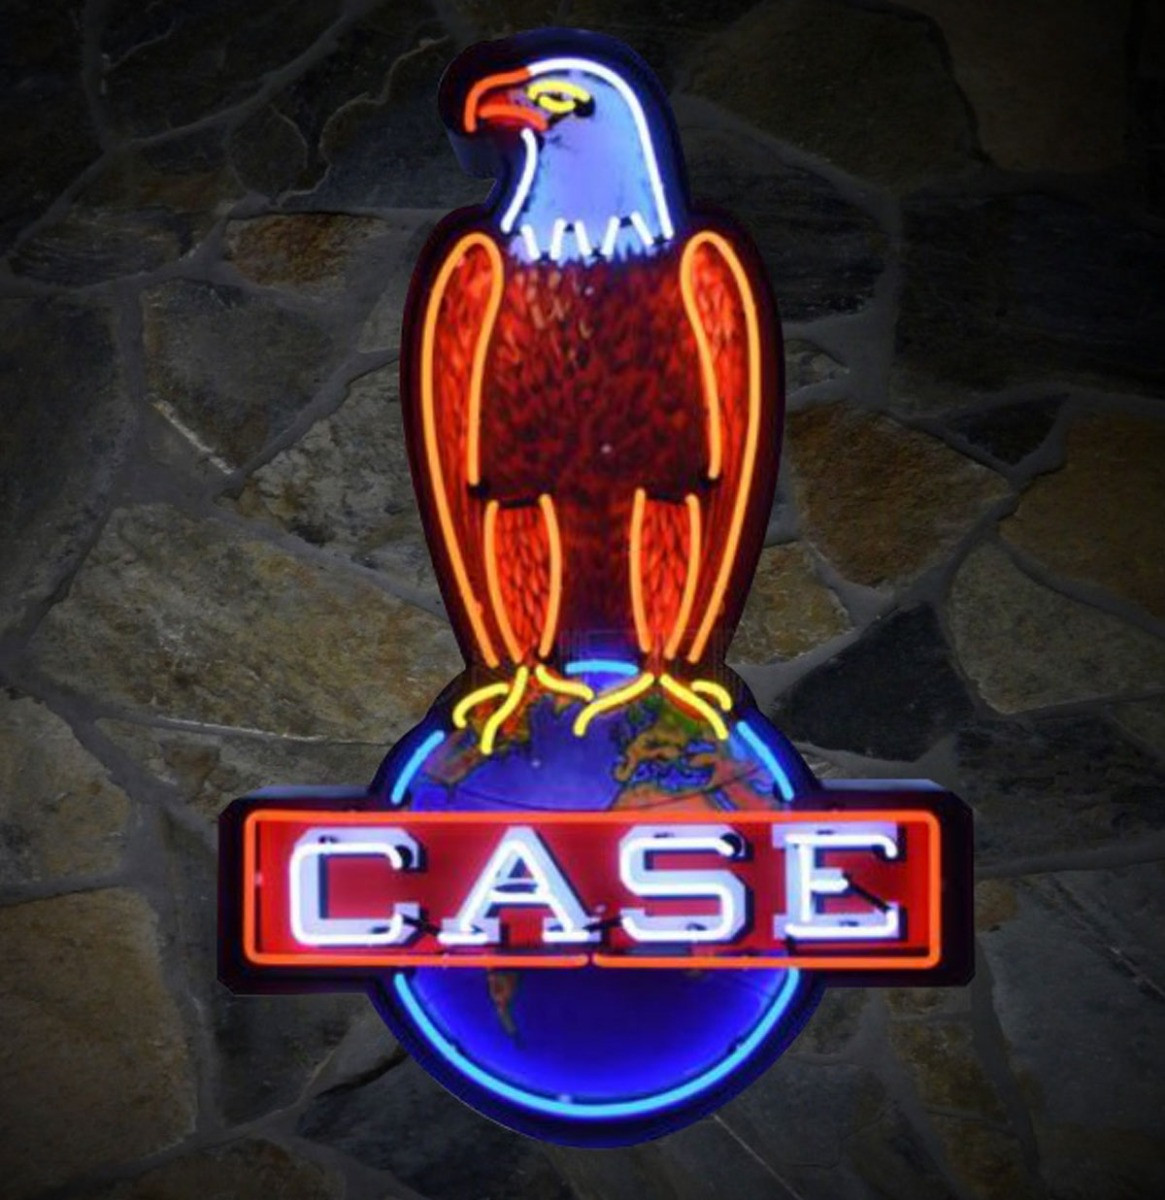 Case Eagle Neon Verlichting XL In Metalen Behuizing - 75 x 112 cm